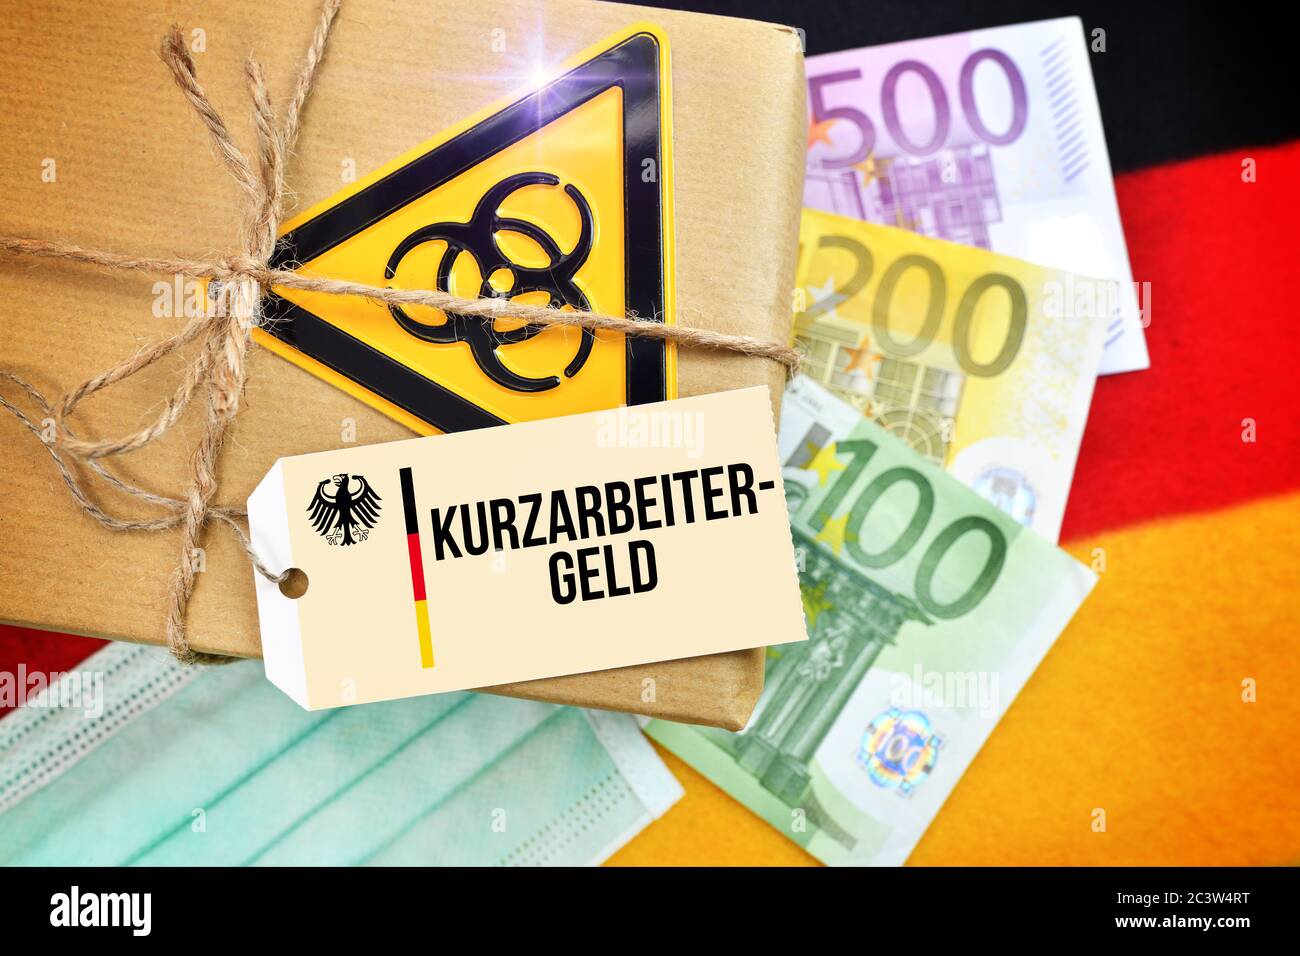 FOTOMONTAGE, Paket Biogefährdungszeichen auf Deutschland Flagge mit Etikett und dem Label Kurzgefährgeld, FOTOMONTAGE, Paket mit Biogefährdungszeichen auf Stockfoto